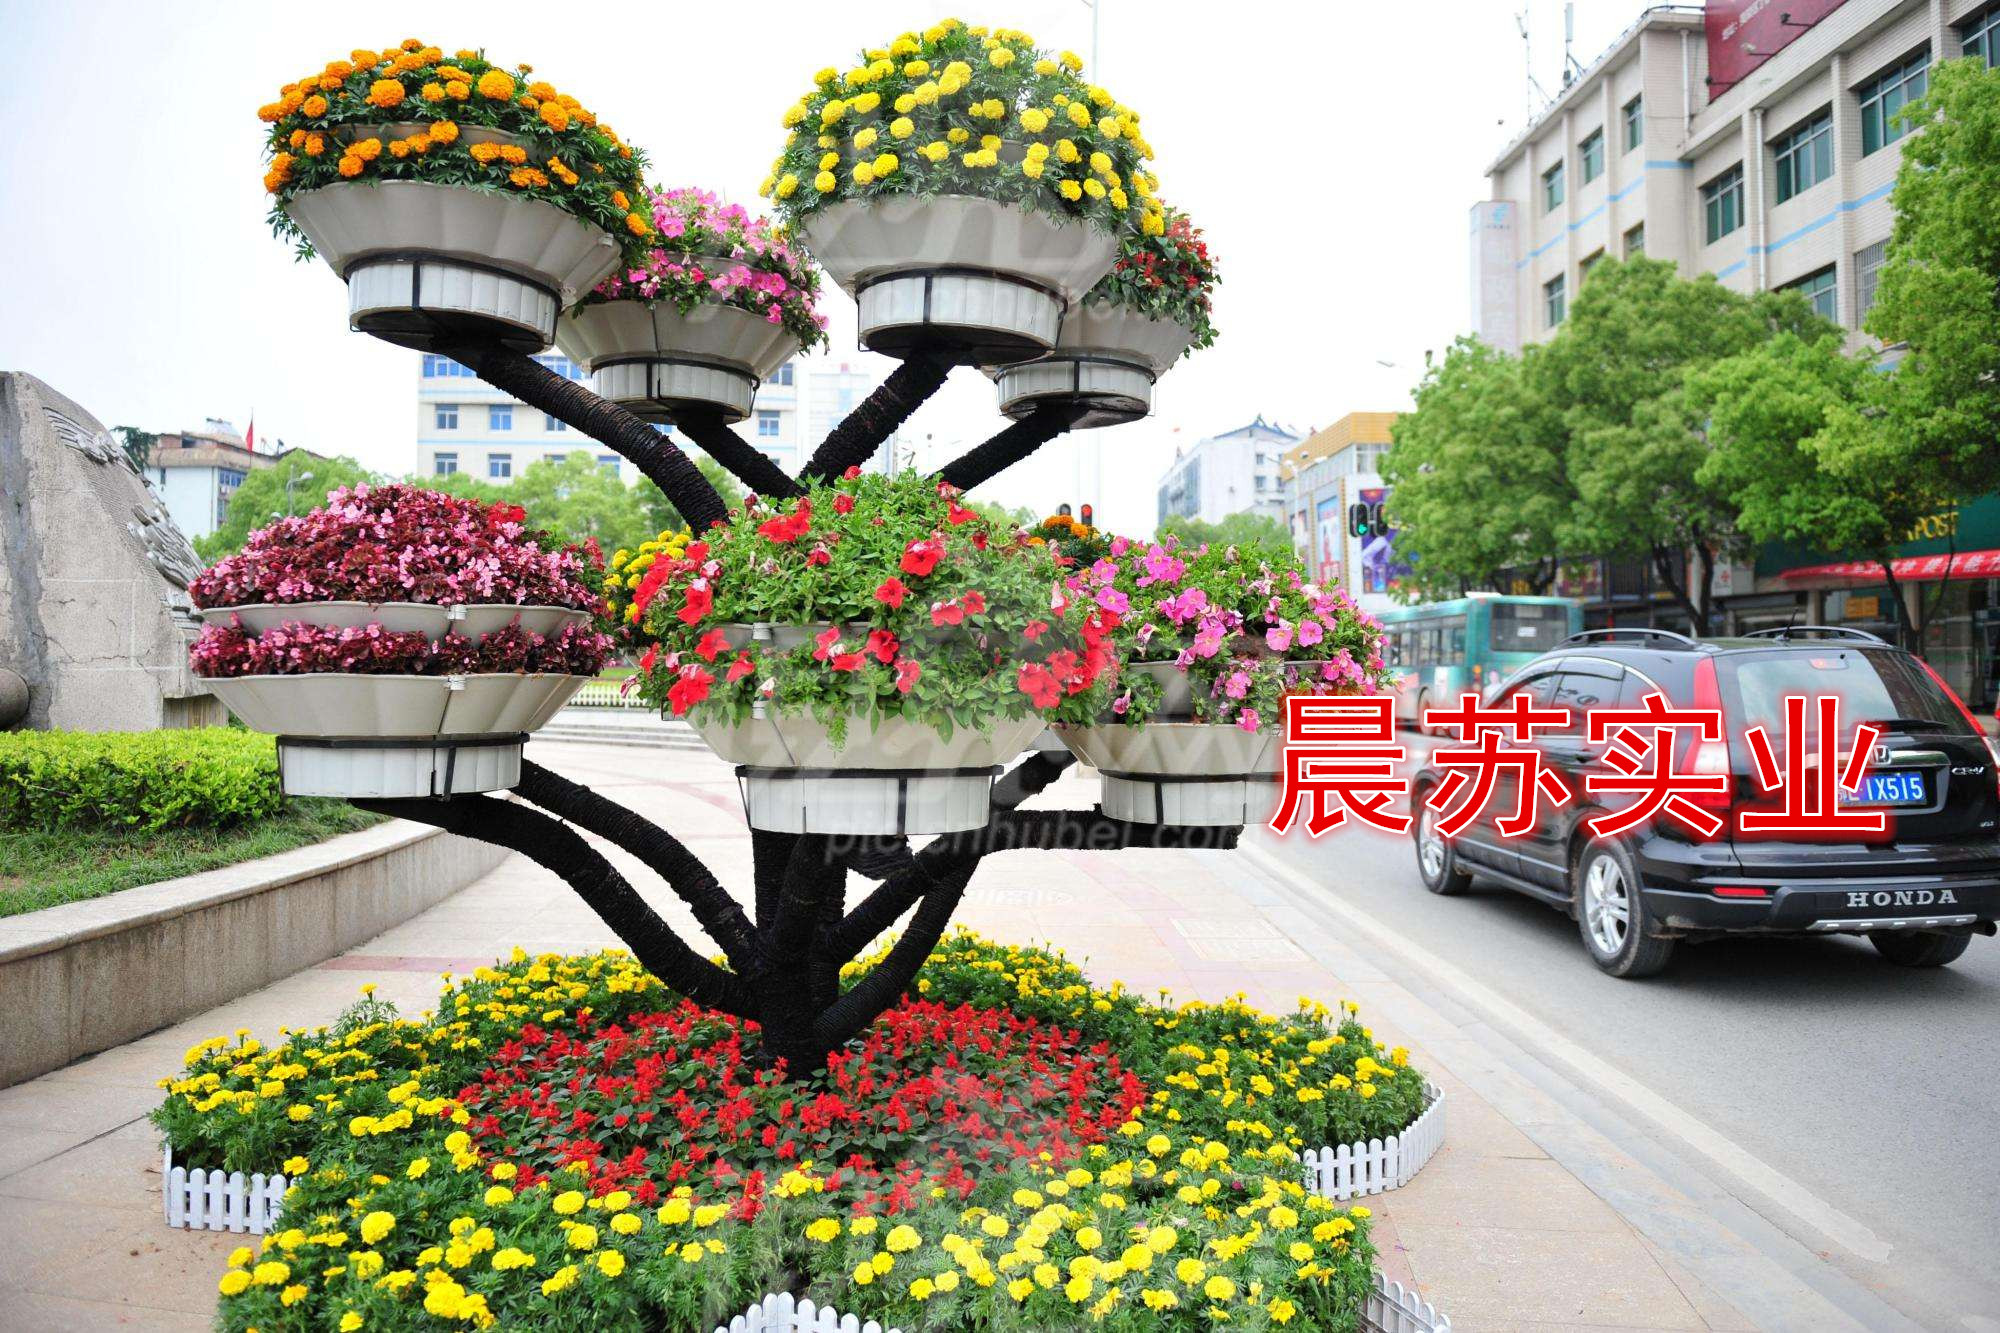 立体绿化 上海专业承接立体绿化工程电话|上海立体绿化施工方案图片